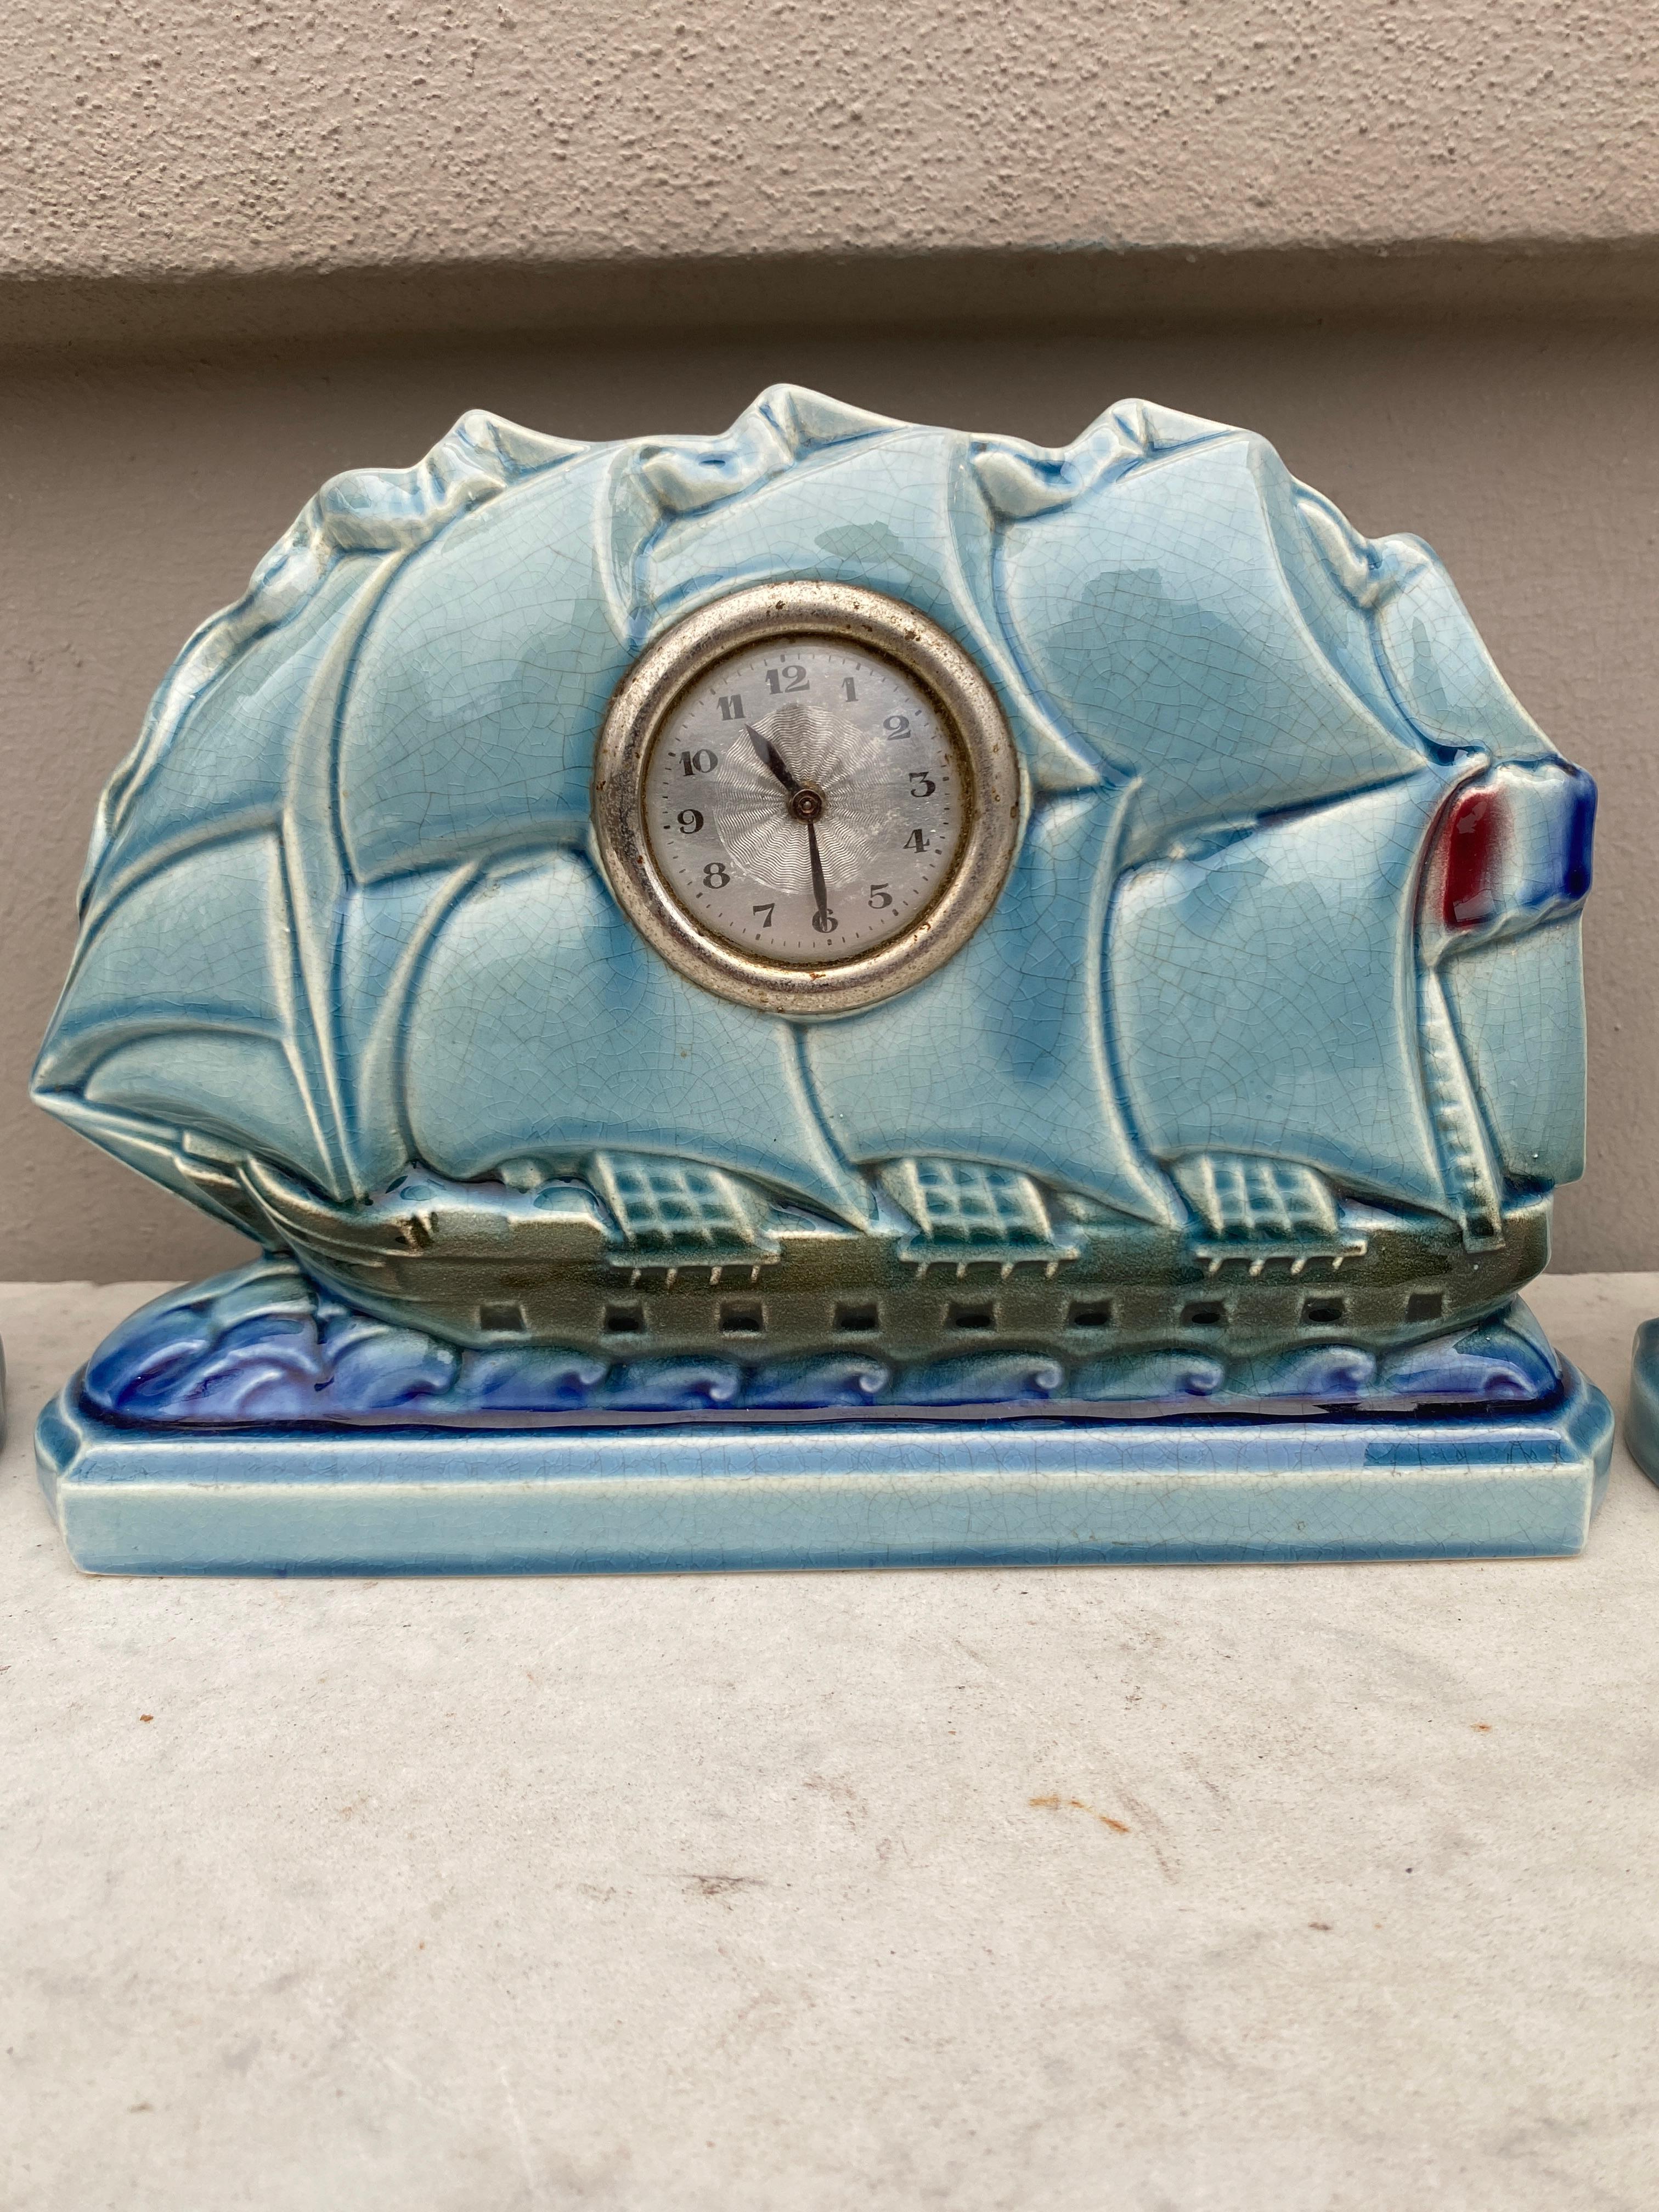 Pendule de voilier en majolique française avec 2 vases Sarreguemines Esdeve Circa 1930.
Ensemble avec une horloge et 2 vases.
Période Art déco.
Horloge / H : 7,3